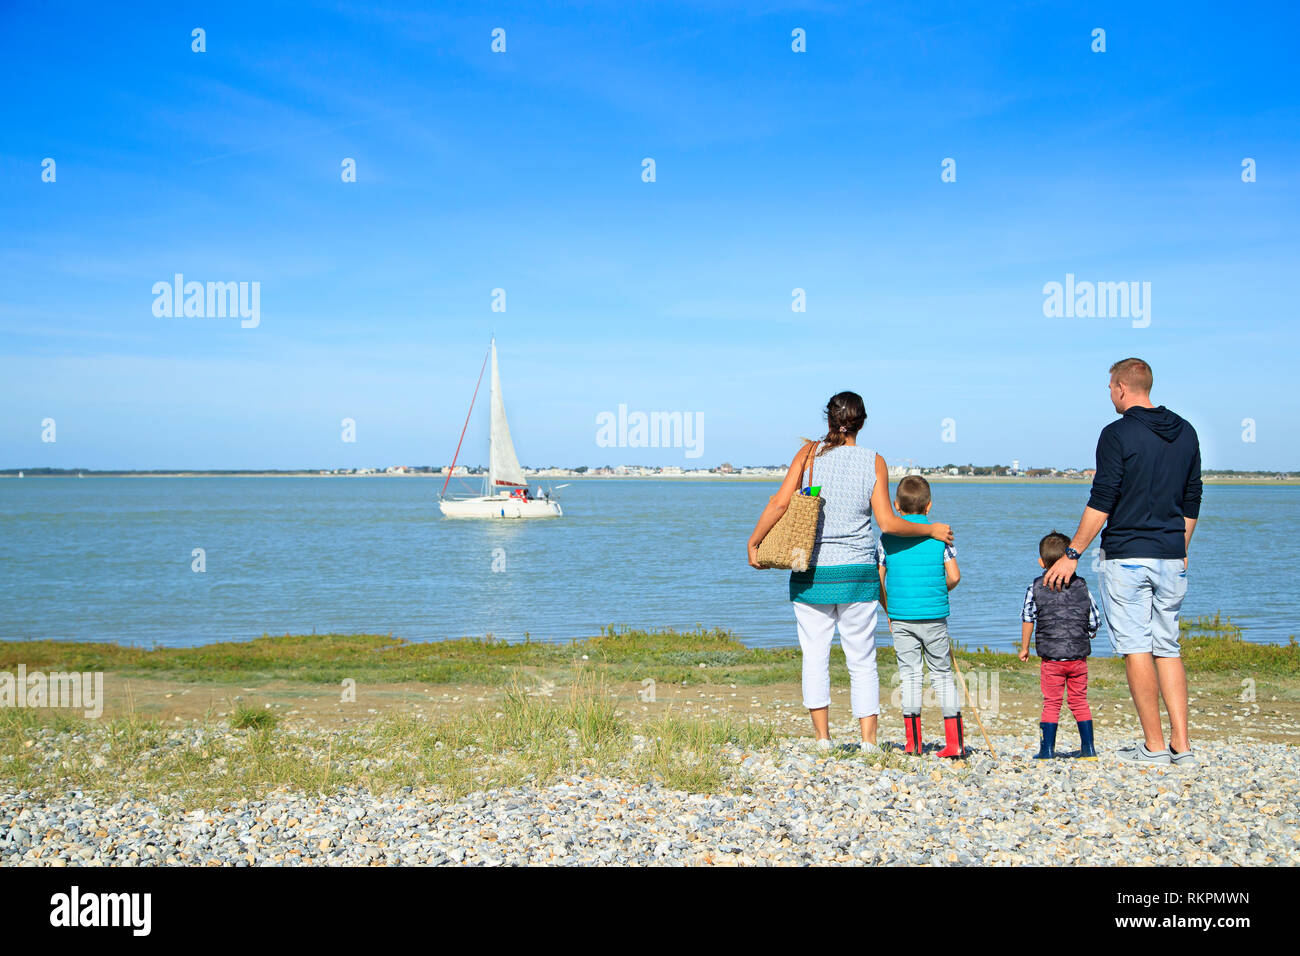 Baie de Somme (nord de la France) : famille avec deux enfants face à la mer, à la recherche d'un voilier sur l'eau, à Saint-Valery-sur-Somme, le long de la zone côtière Banque D'Images